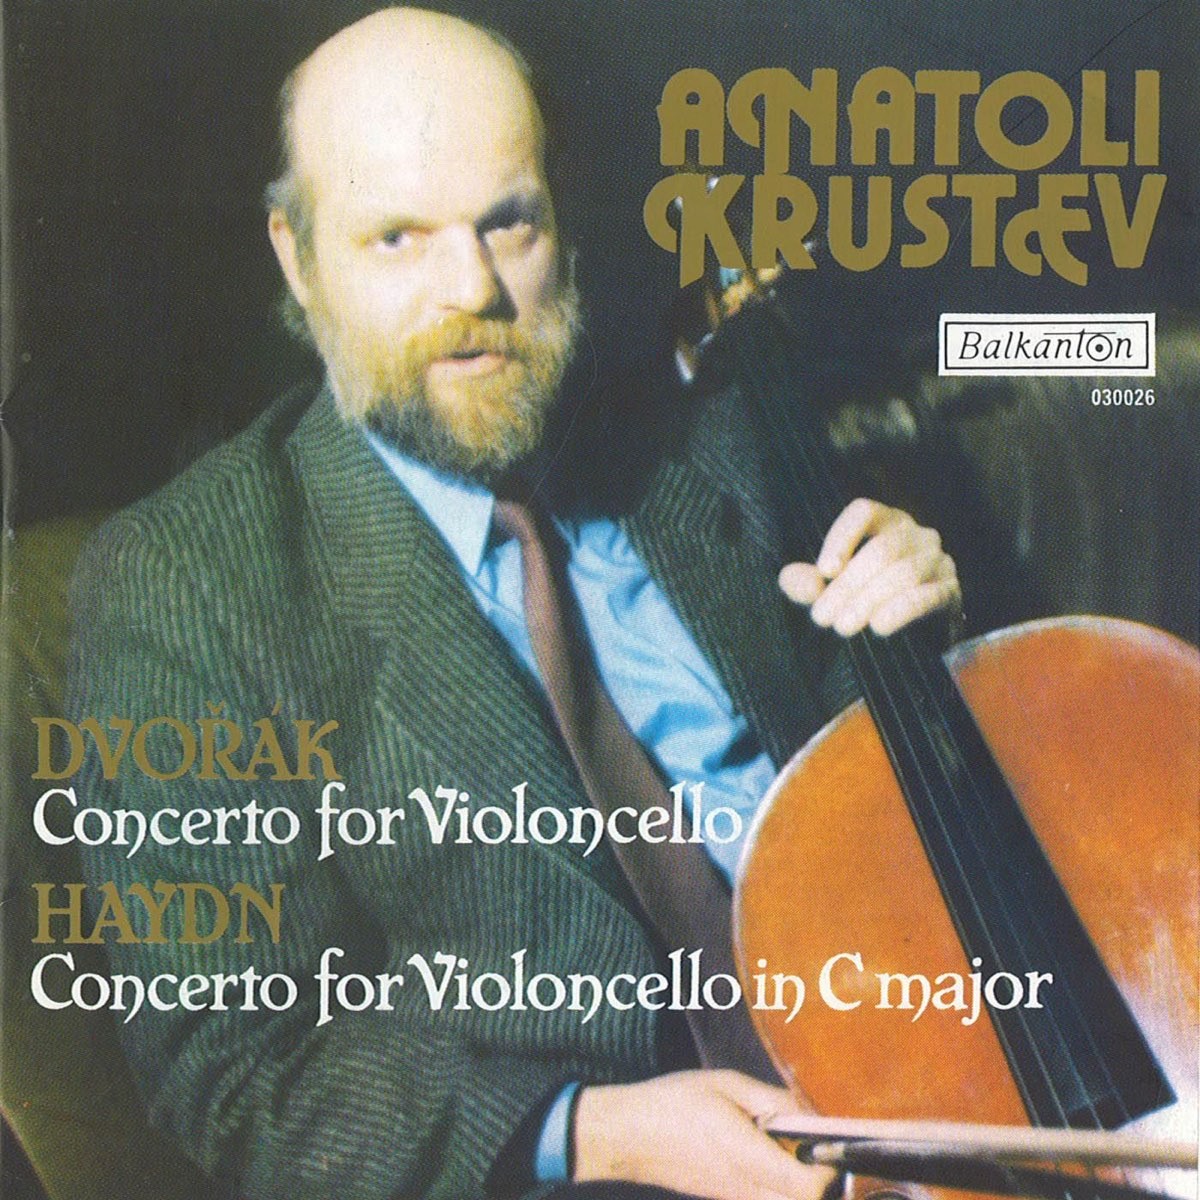 Anatoli Krastev - violoncello